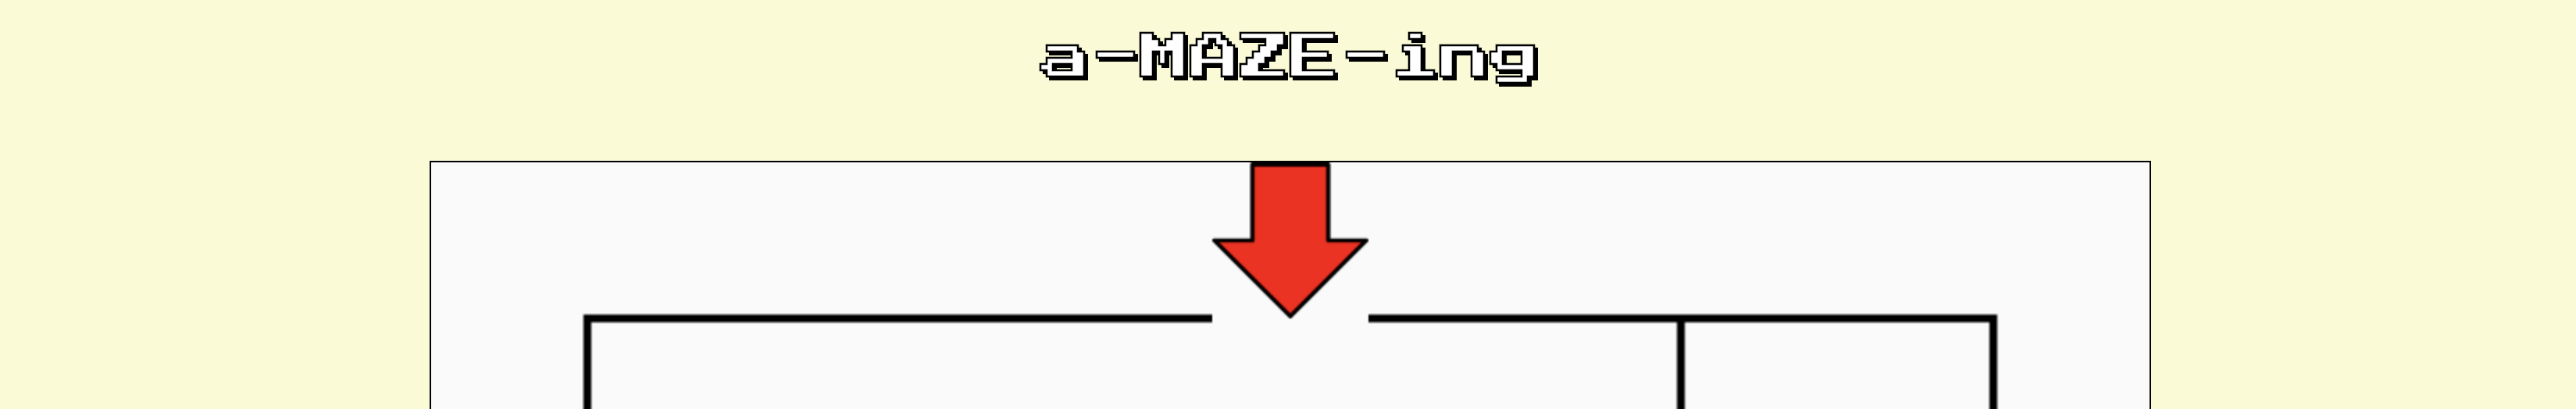 a-maze-ing.png